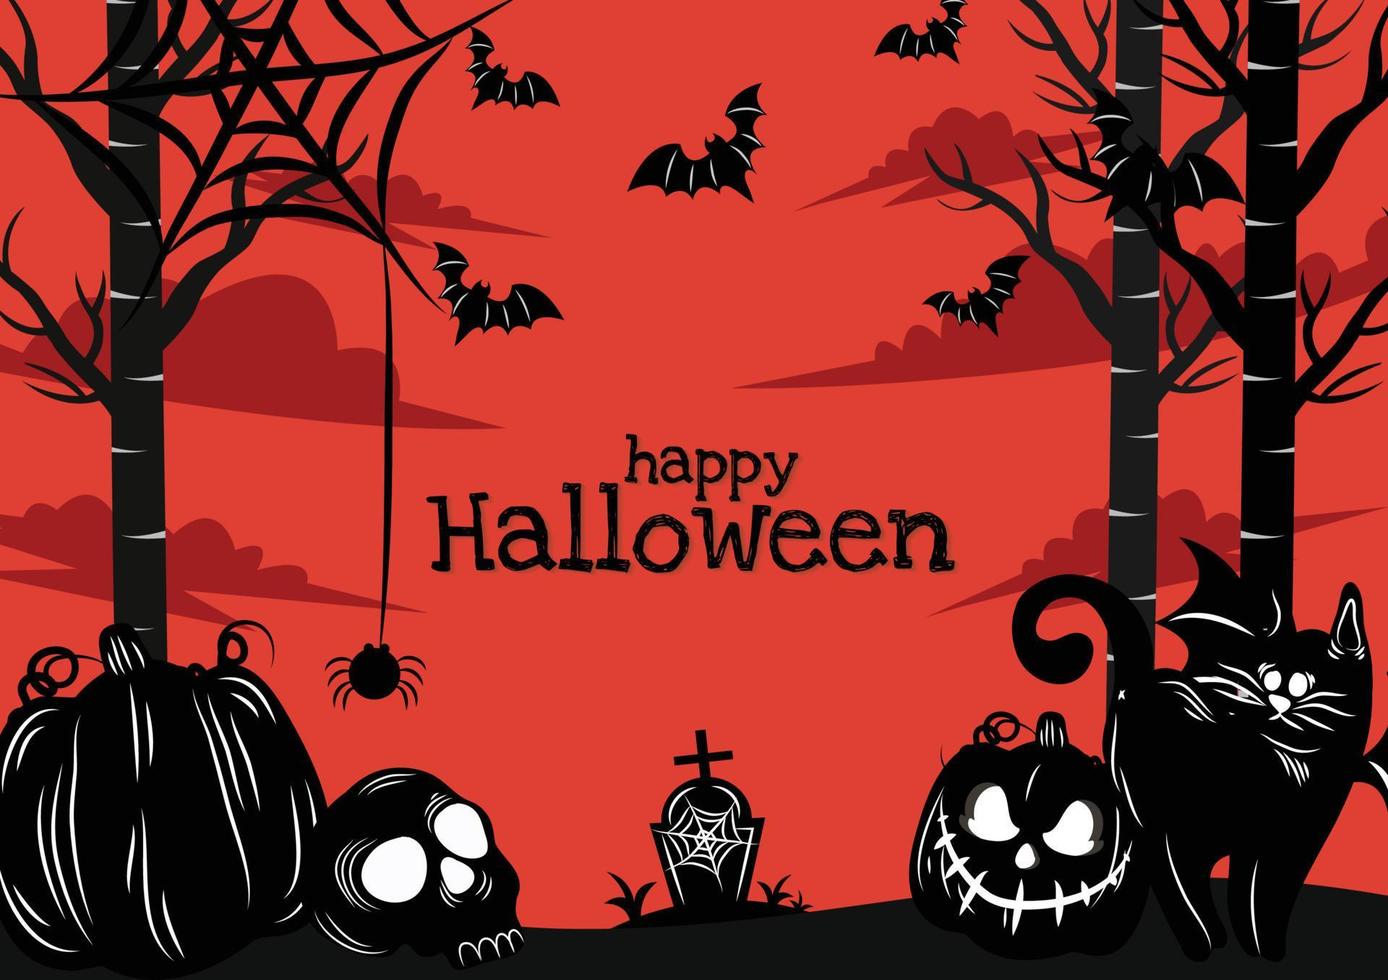 spooky pumpkins and cute black cat banner design vector